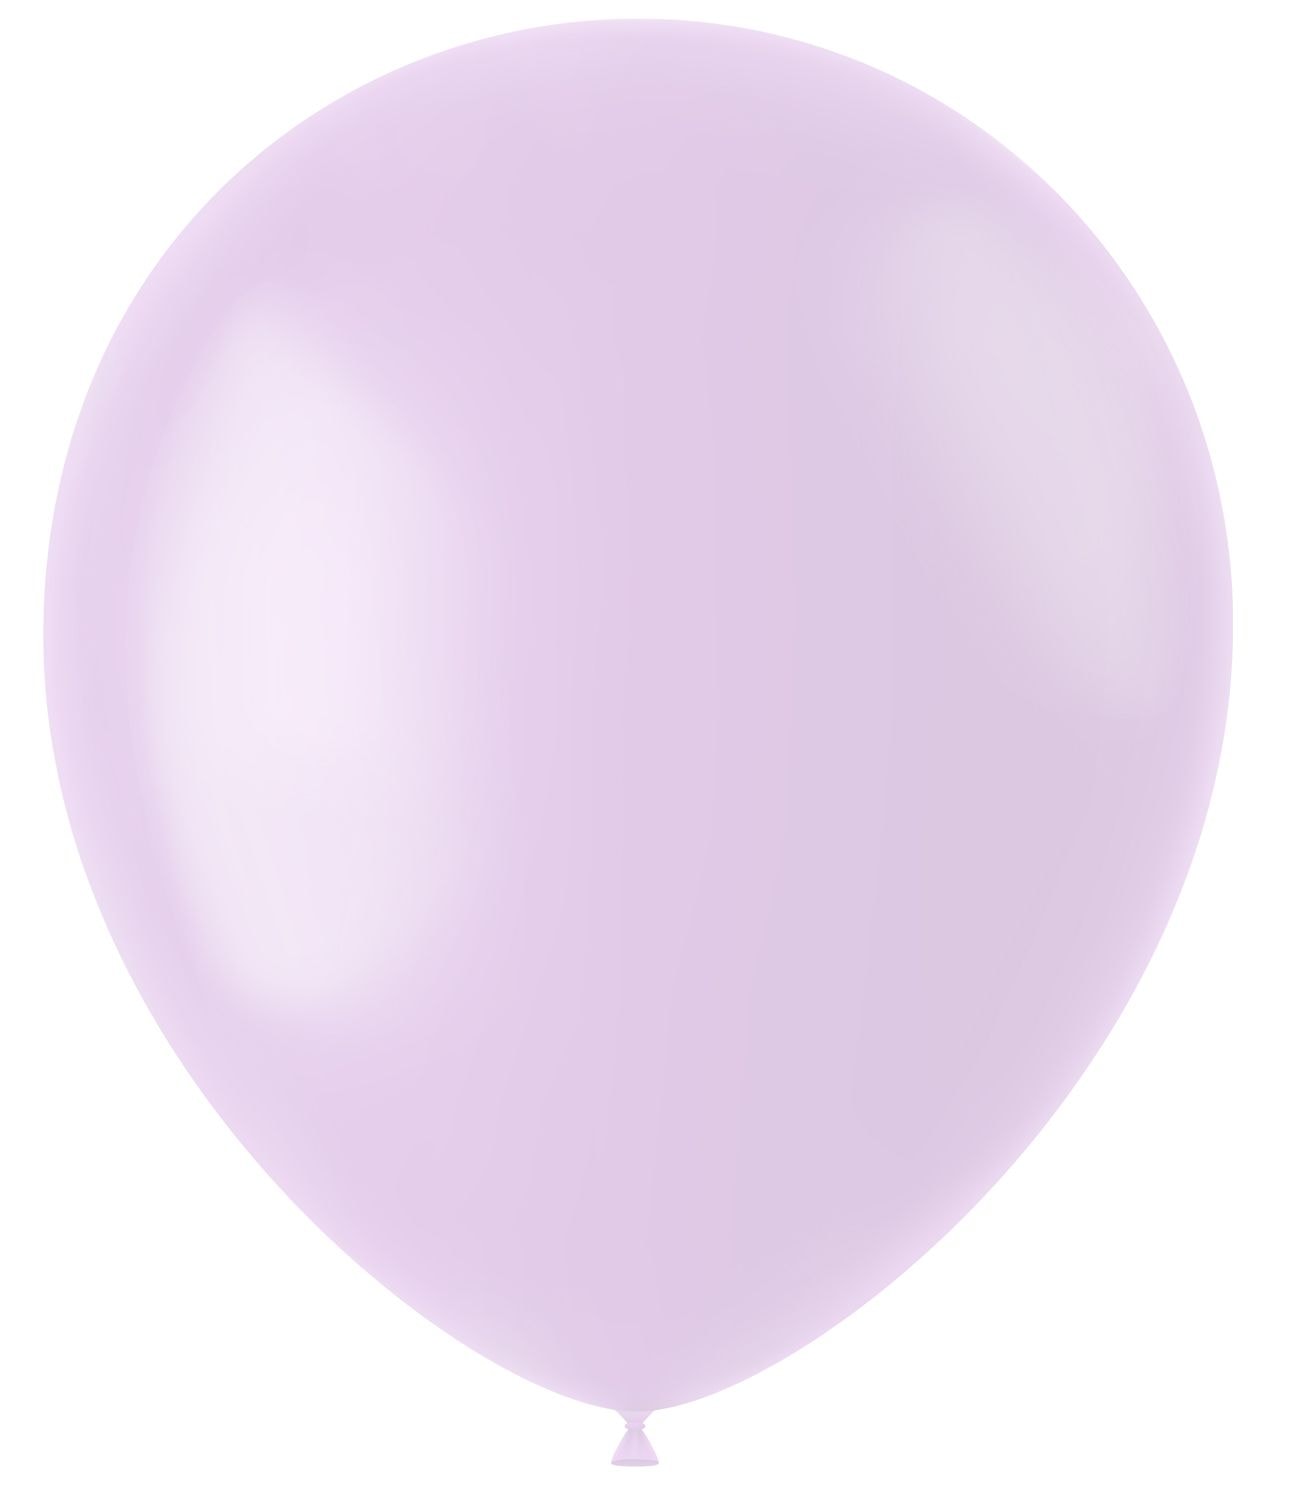 50 ballonnen powder lilac mat 33cm